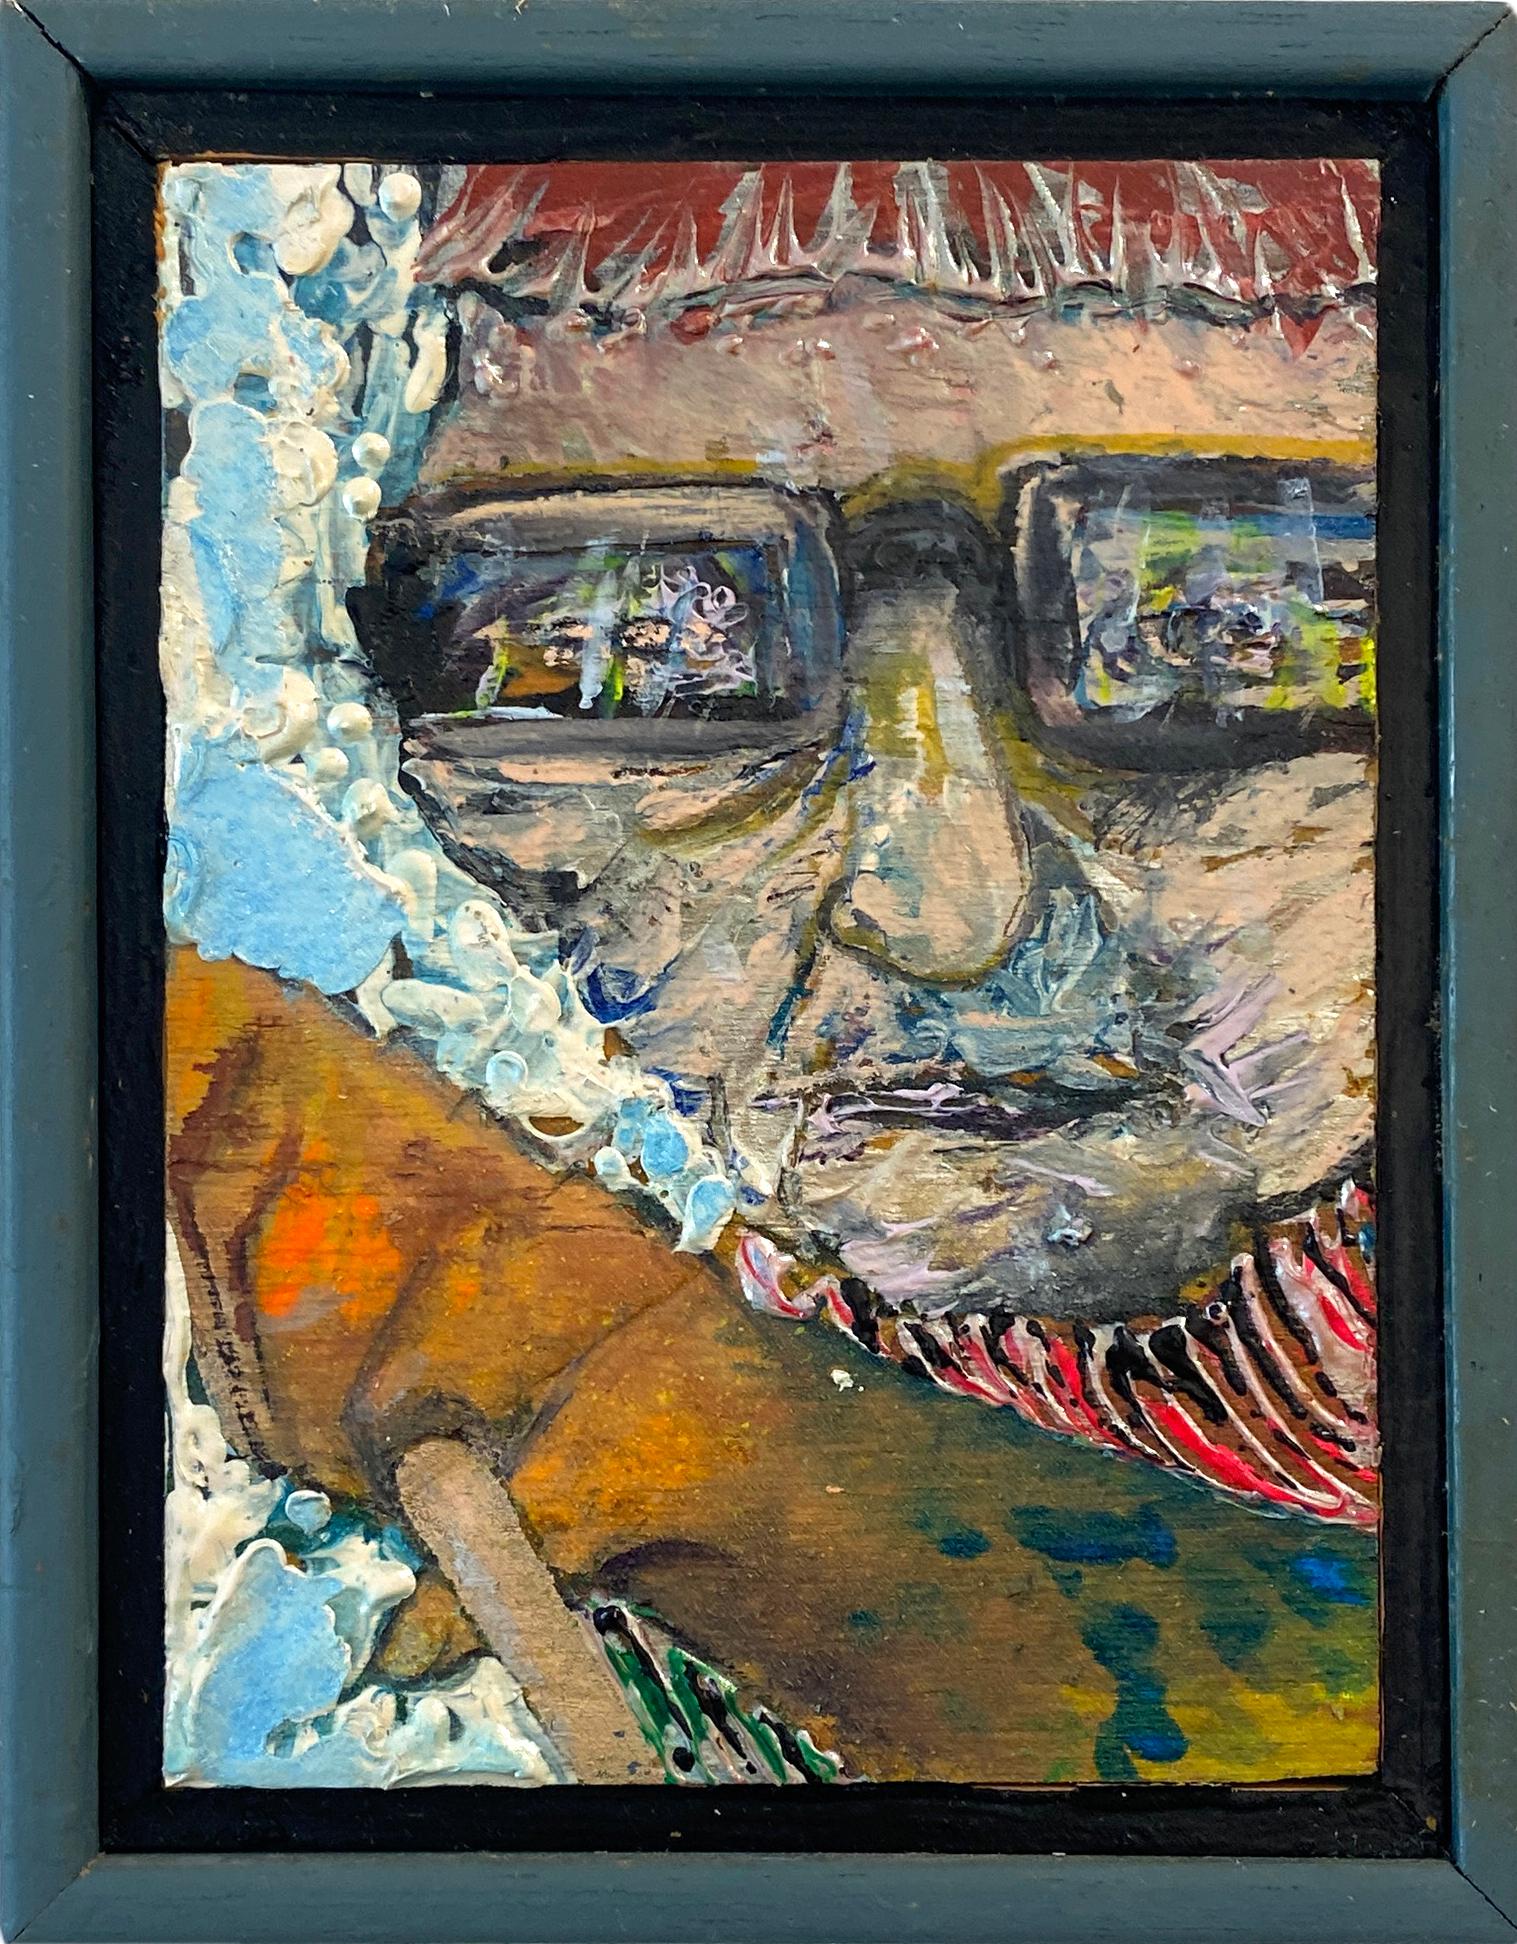 Erhältlich bei Madelyn Jordon Fine Art. 'Marblemanblossom' von Stanley Boxer, 1991. Öl und Mischtechnik auf Leinwand, 6,25 x 4,75 cm. / Rahmen: 7 x 5.5 x 2 in.  Dieses Gemälde zeigt das Gesicht eines Mannes mit Brille und ausgestrecktem Arm. Dieses